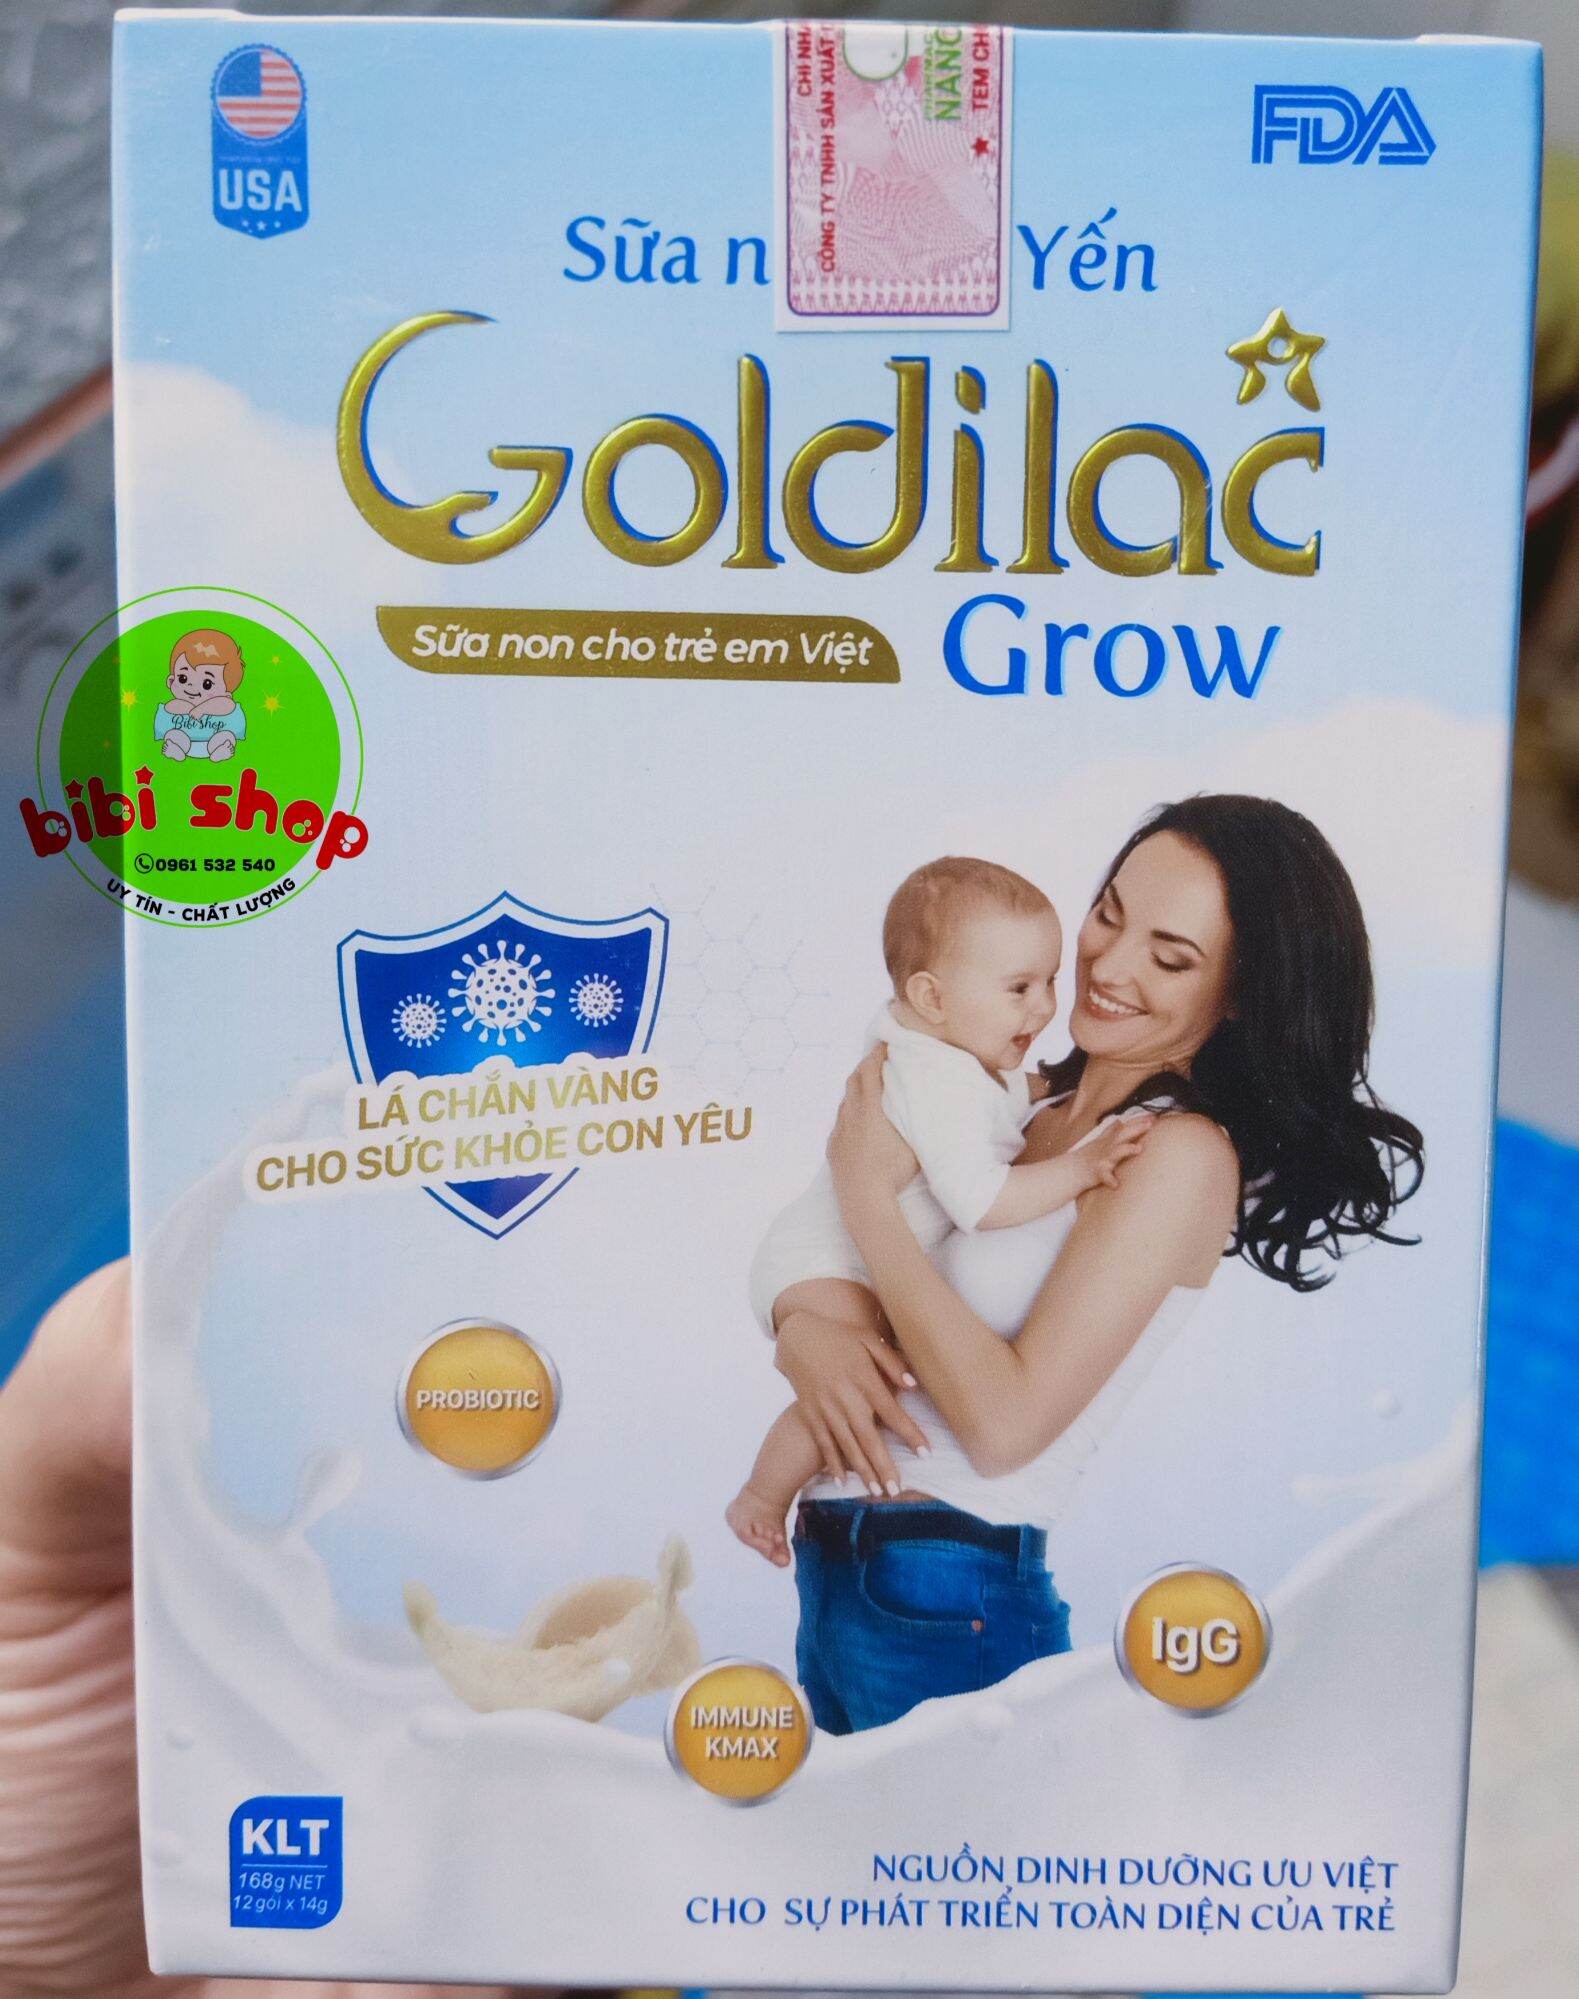 Sữa non Glodilac Grow sữa non tổ yến 12 gói